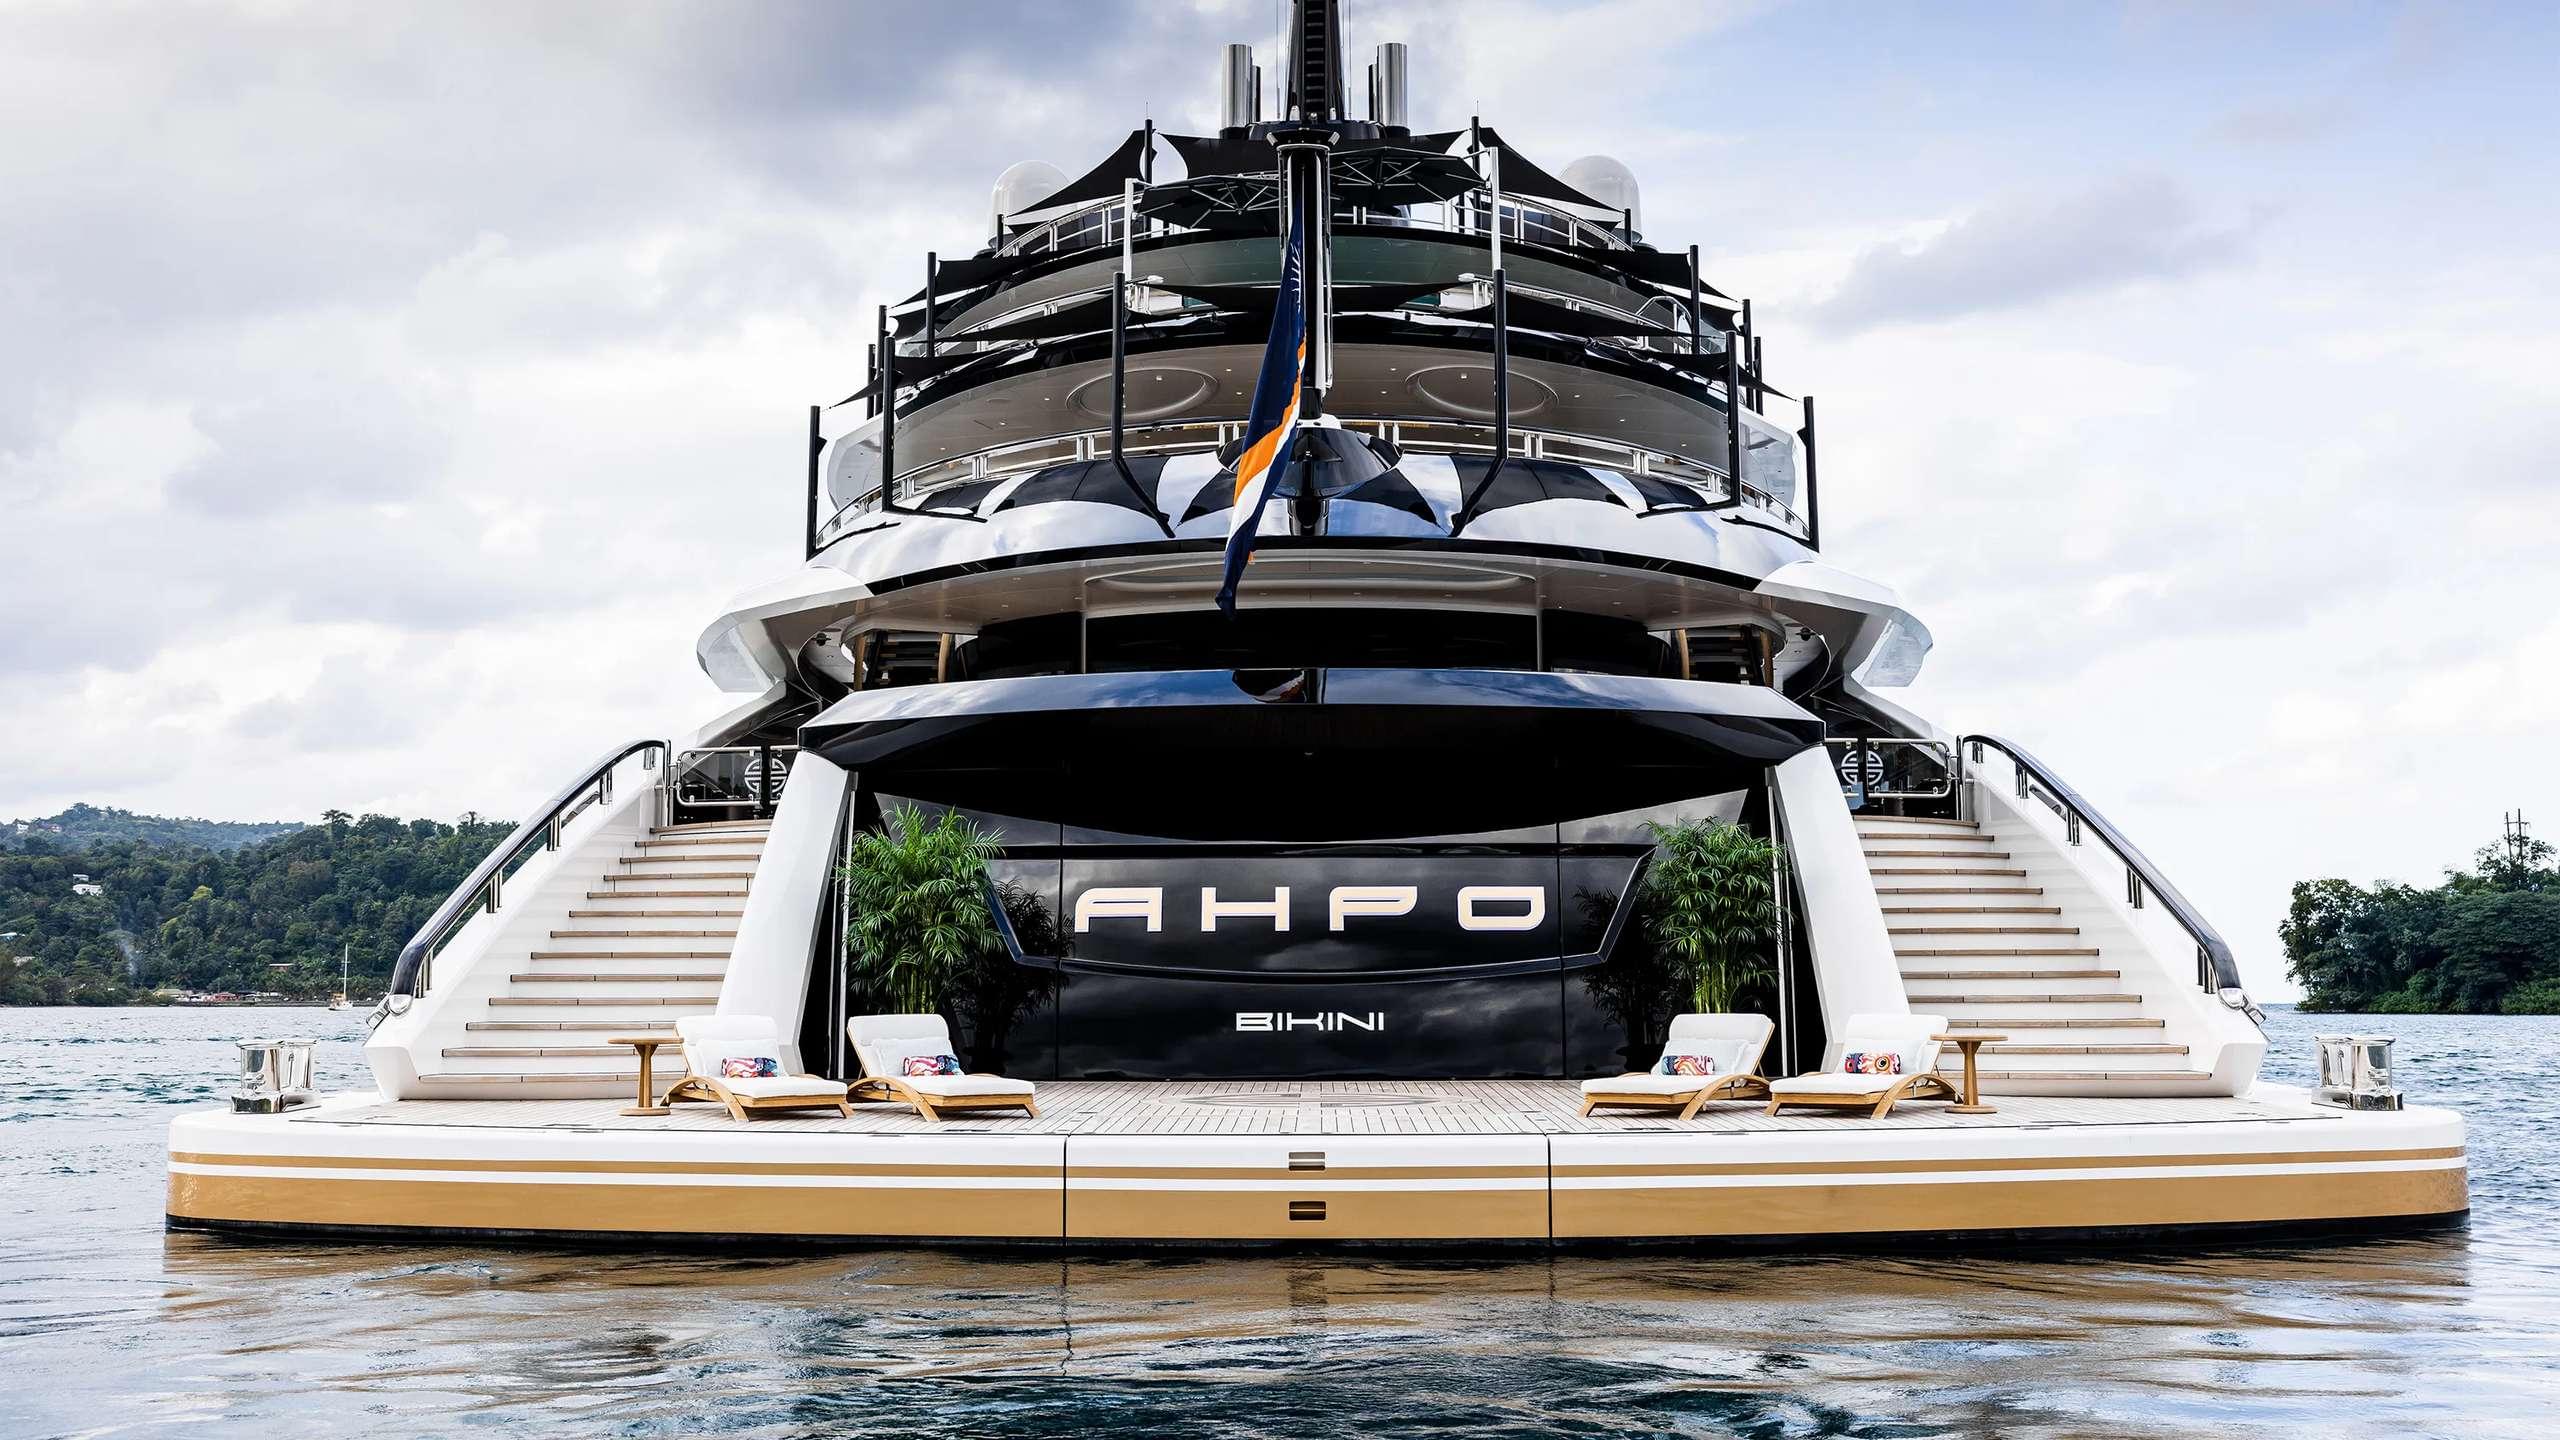 ahpo yacht for sale